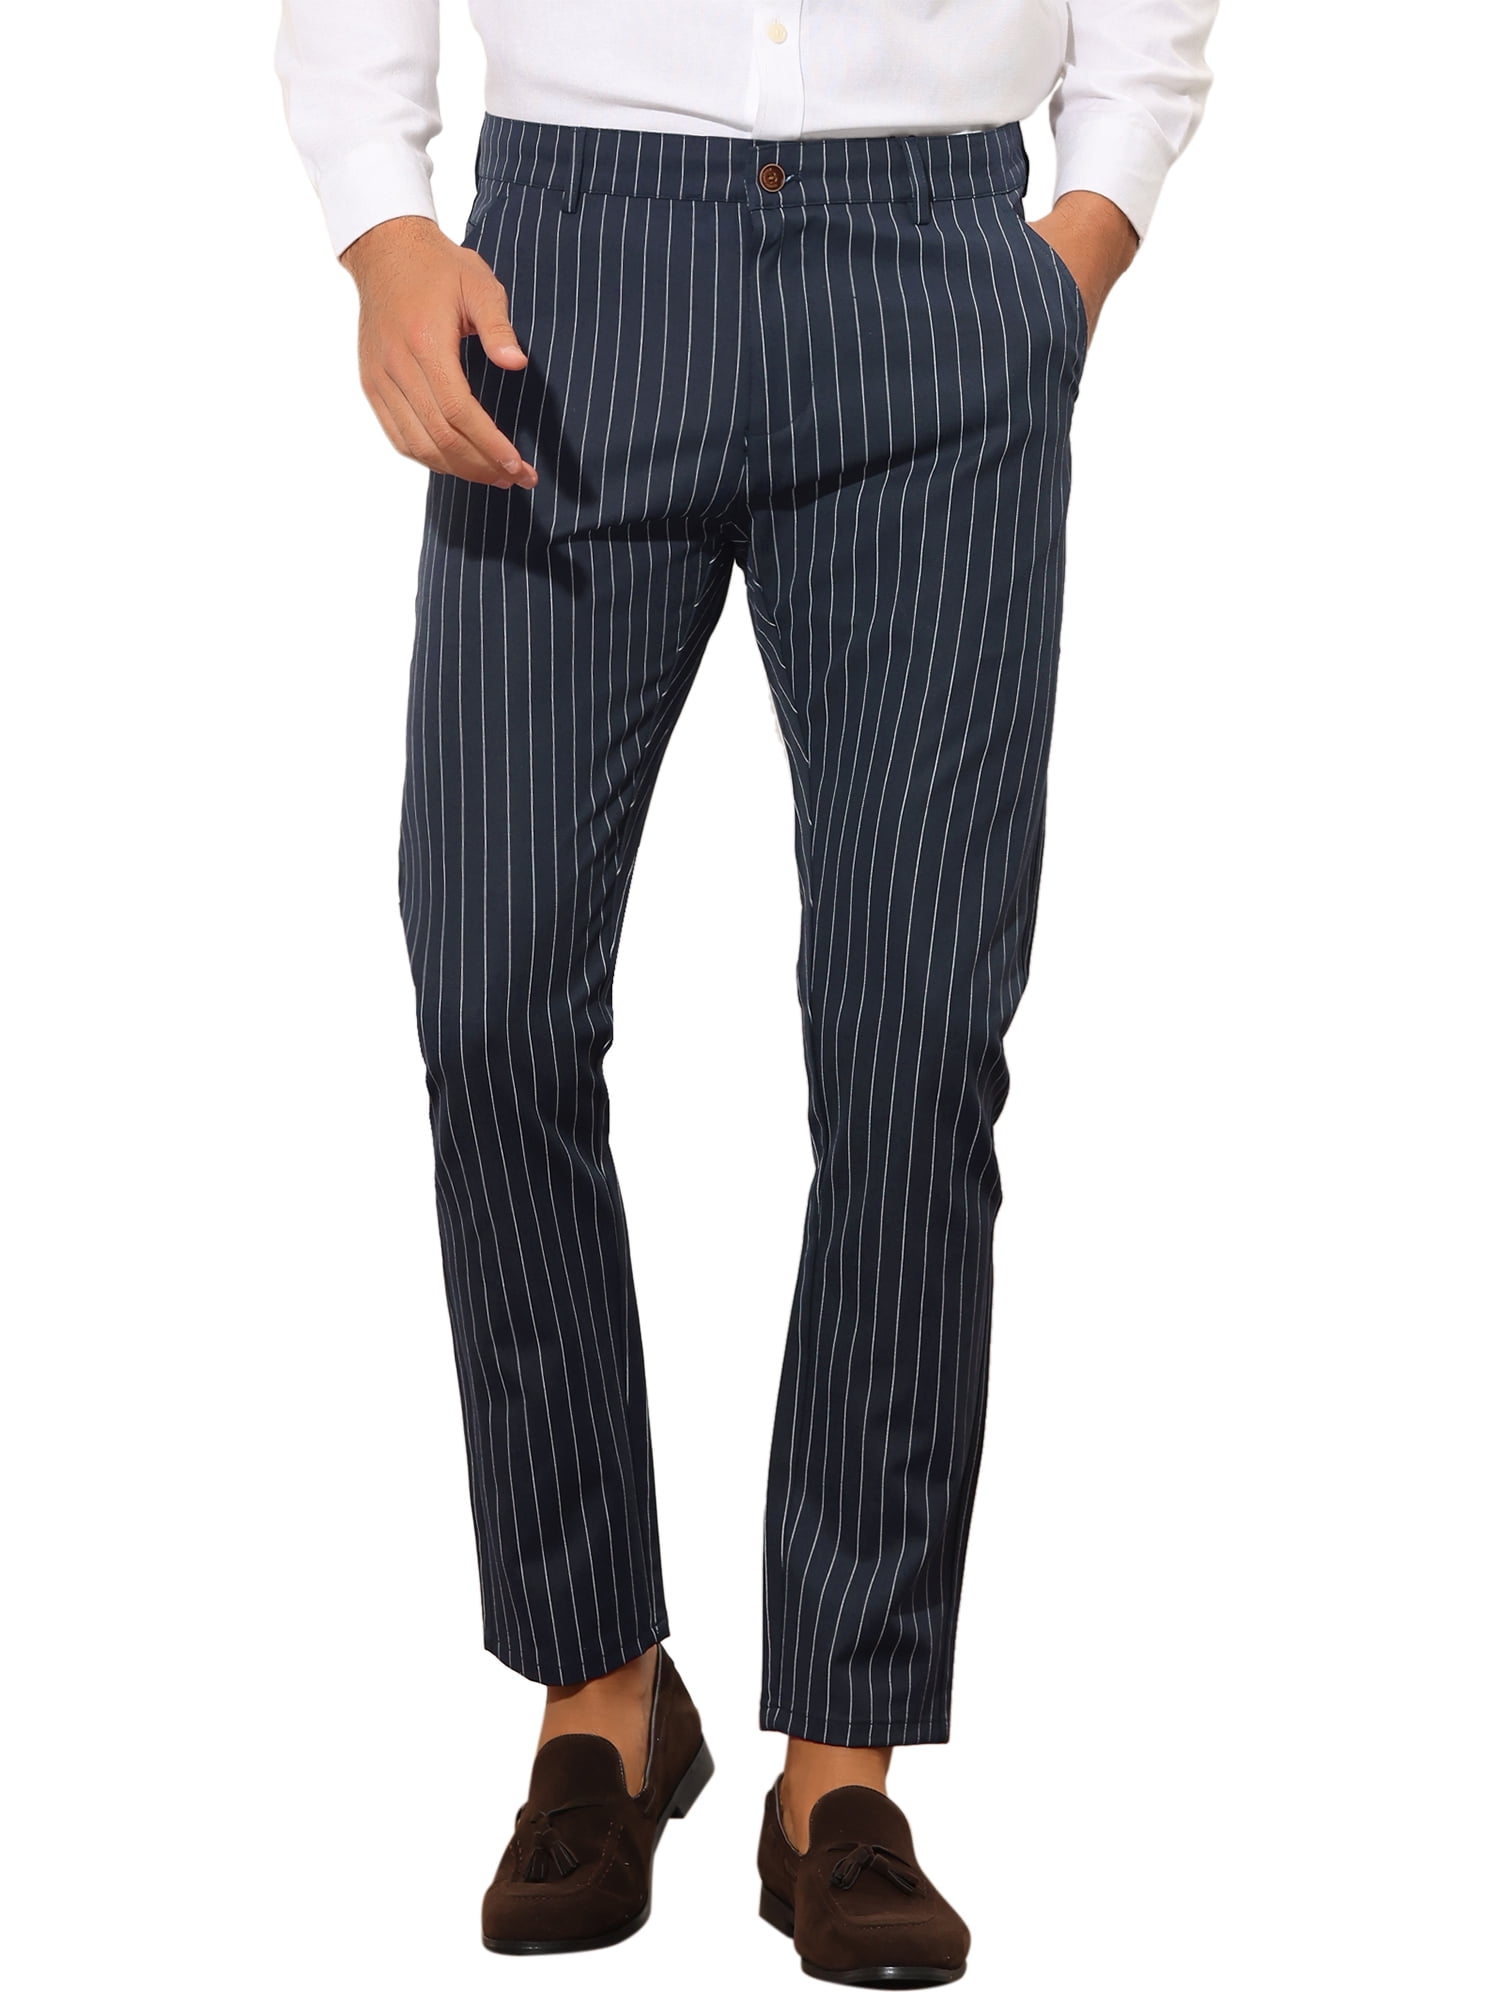 Lars Amadeus Striped Dress Pants for Men's Slim Fit Business Suit Trousers